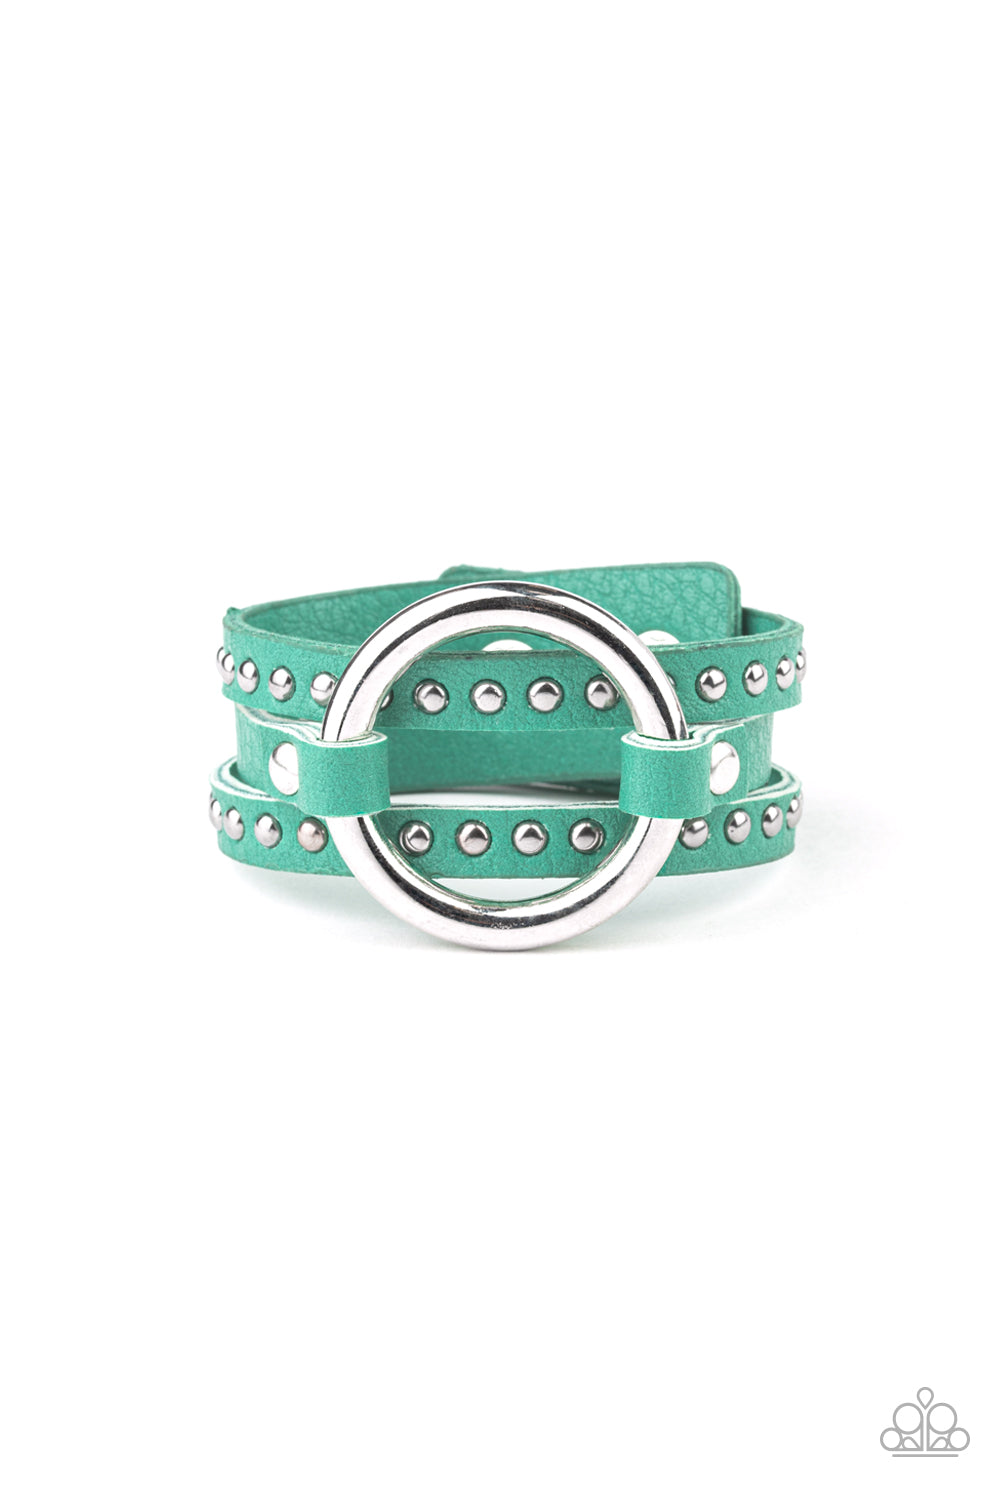 Studded Statement Maker - green - Paparazzi bracelet